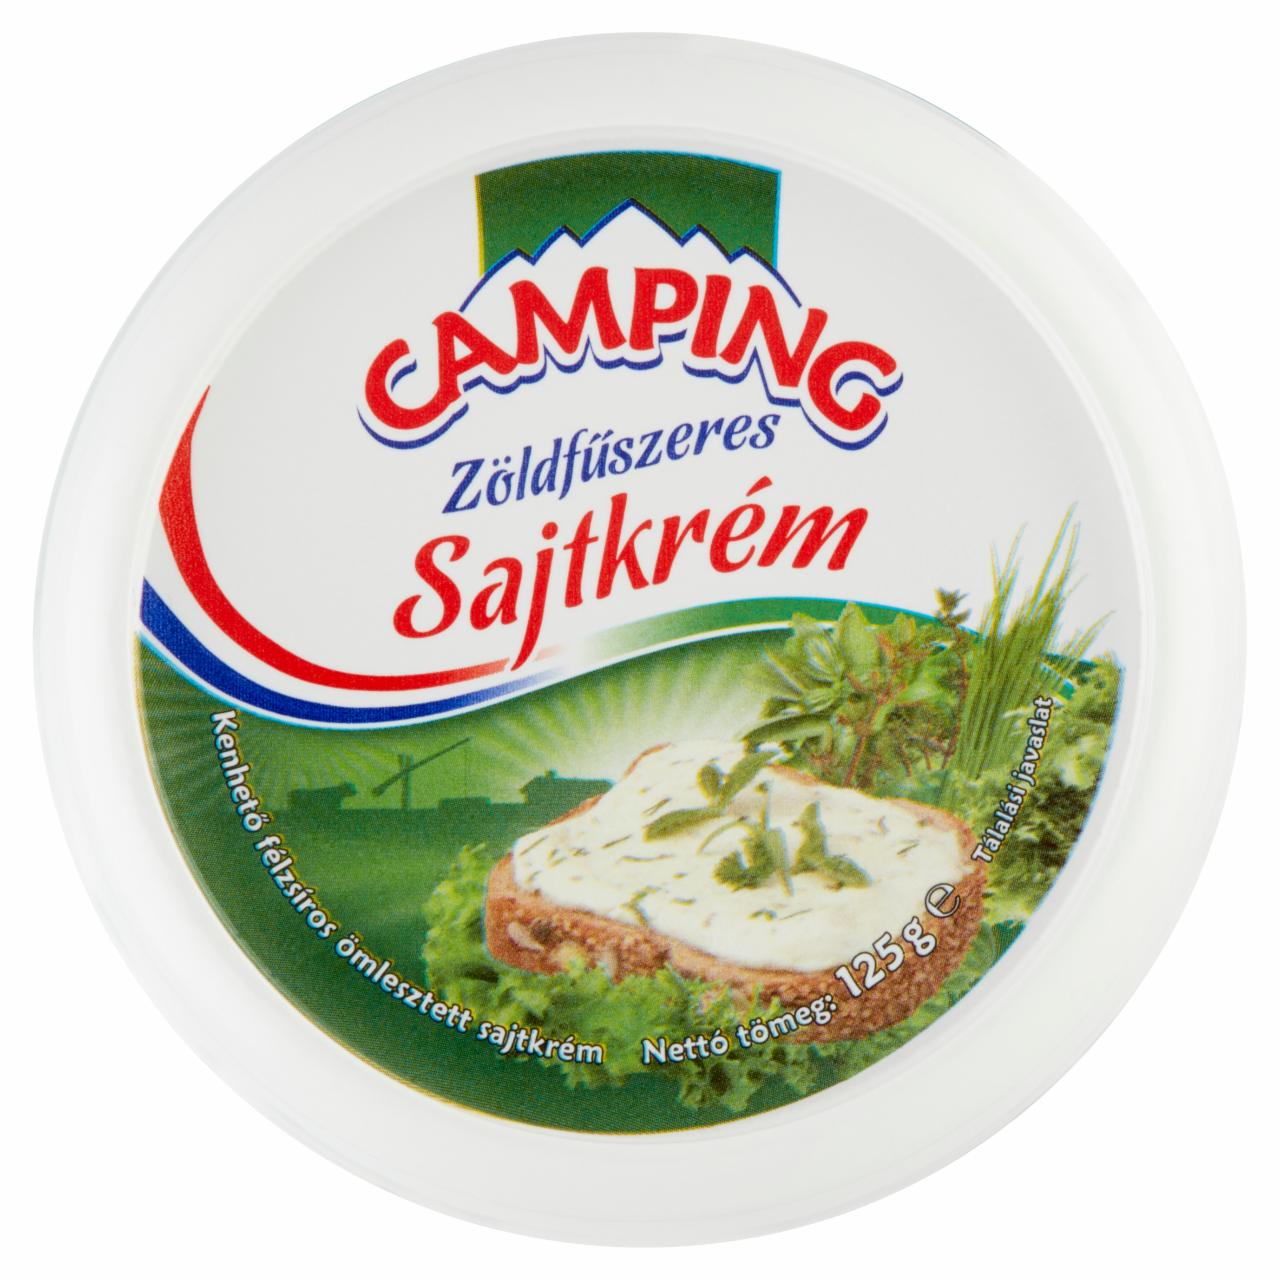 Képek - Camping zöldfűszeres sajtkrém 125 g